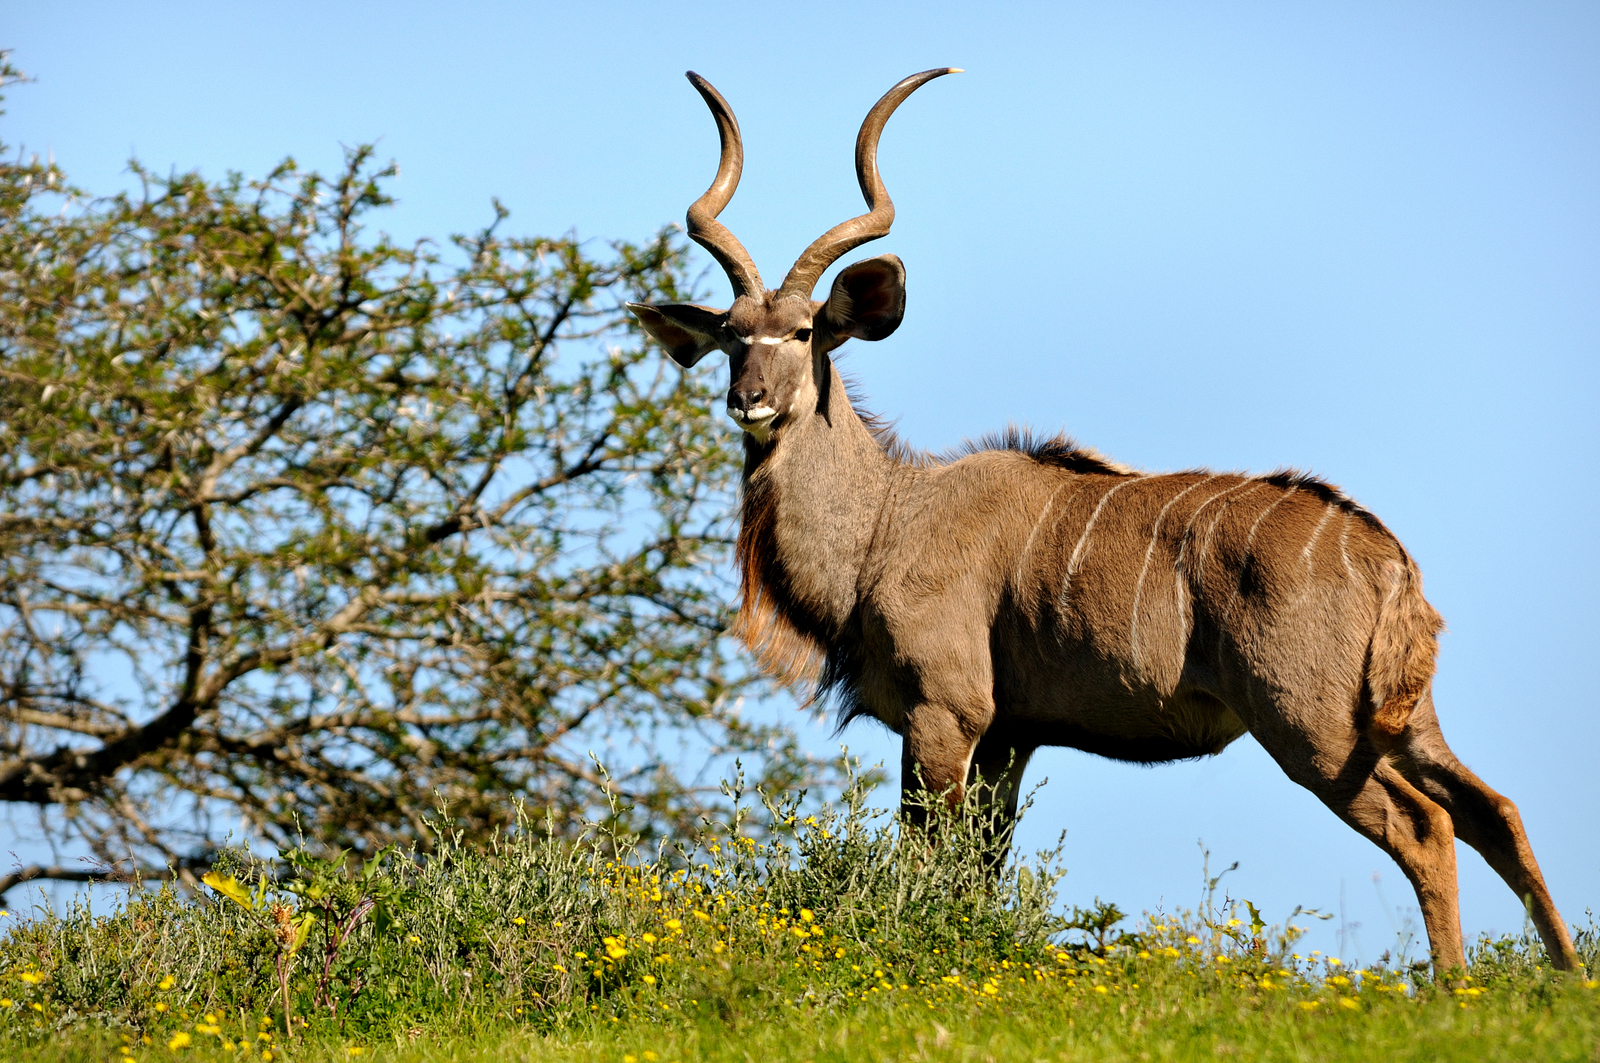 Kudu Ram, often confused with Nyala the Bambi of Africa